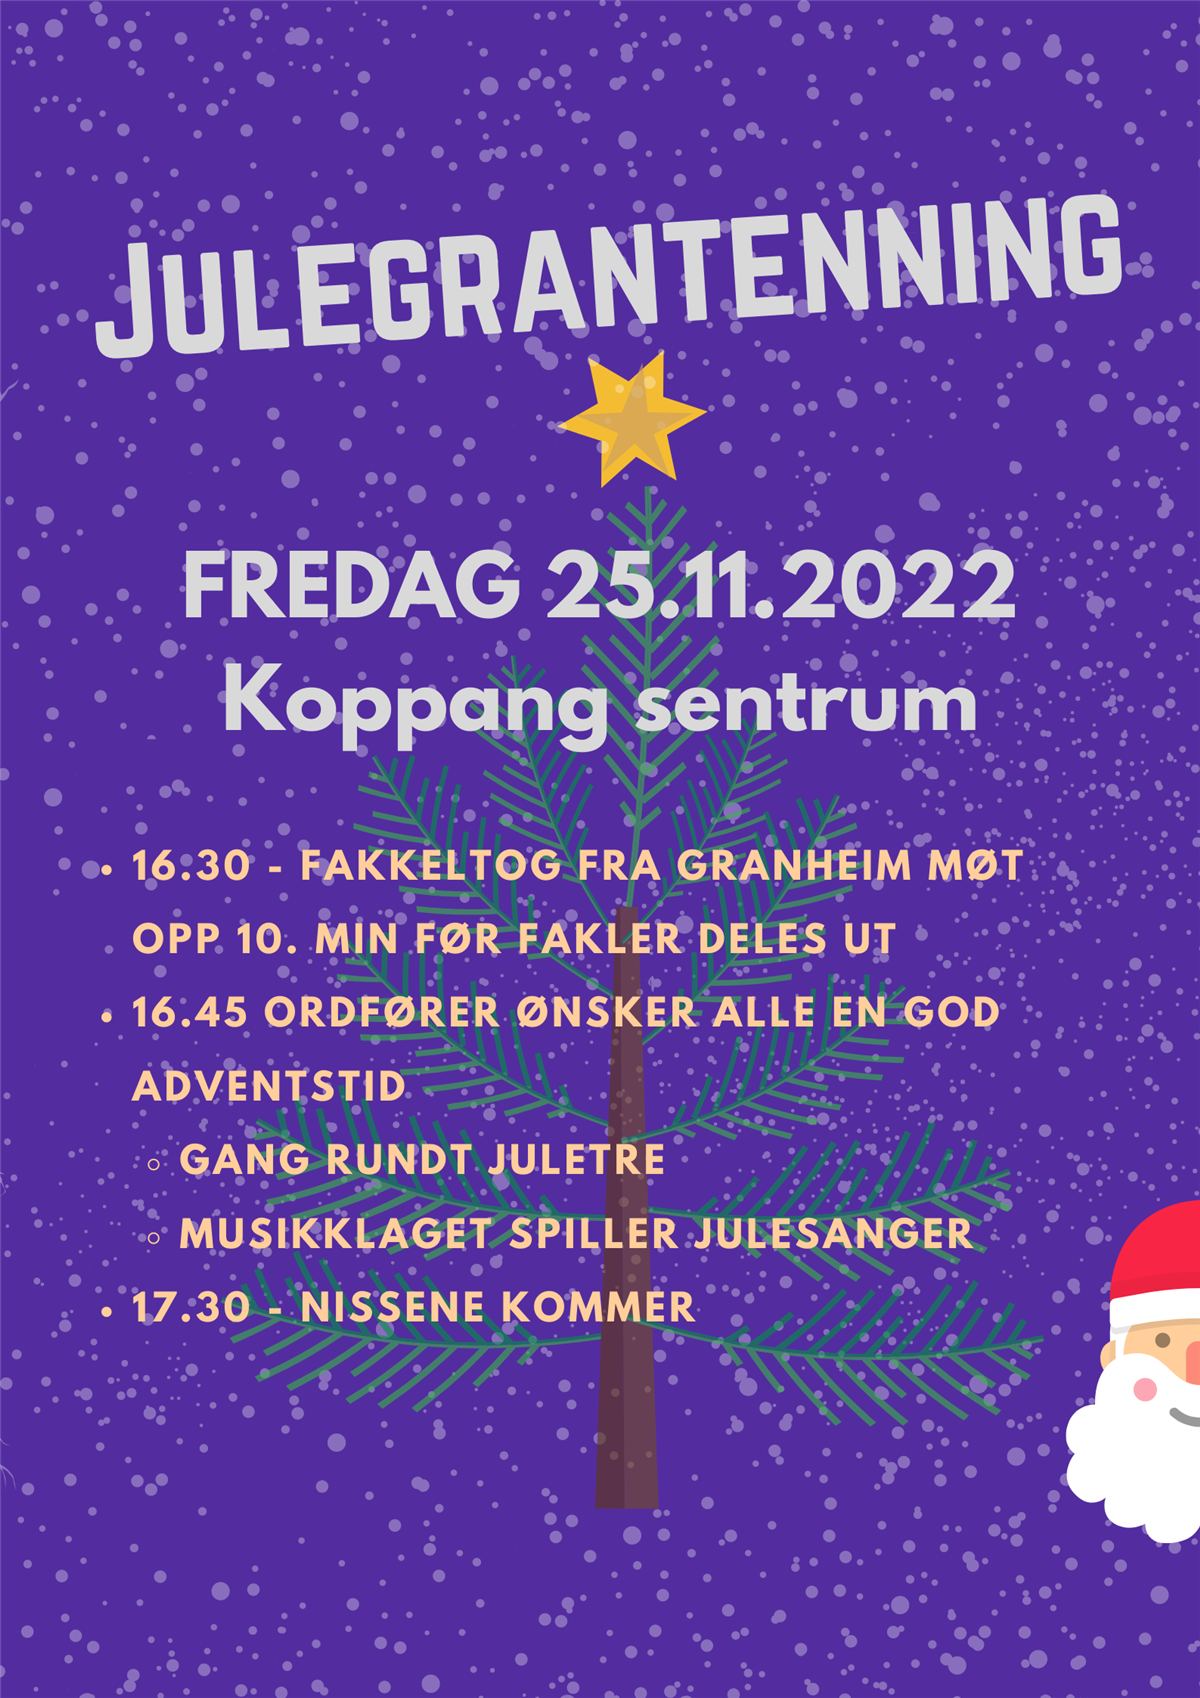 Viser programoversikt for julegrantenning i Koppang sentrum - Klikk for stort bilde